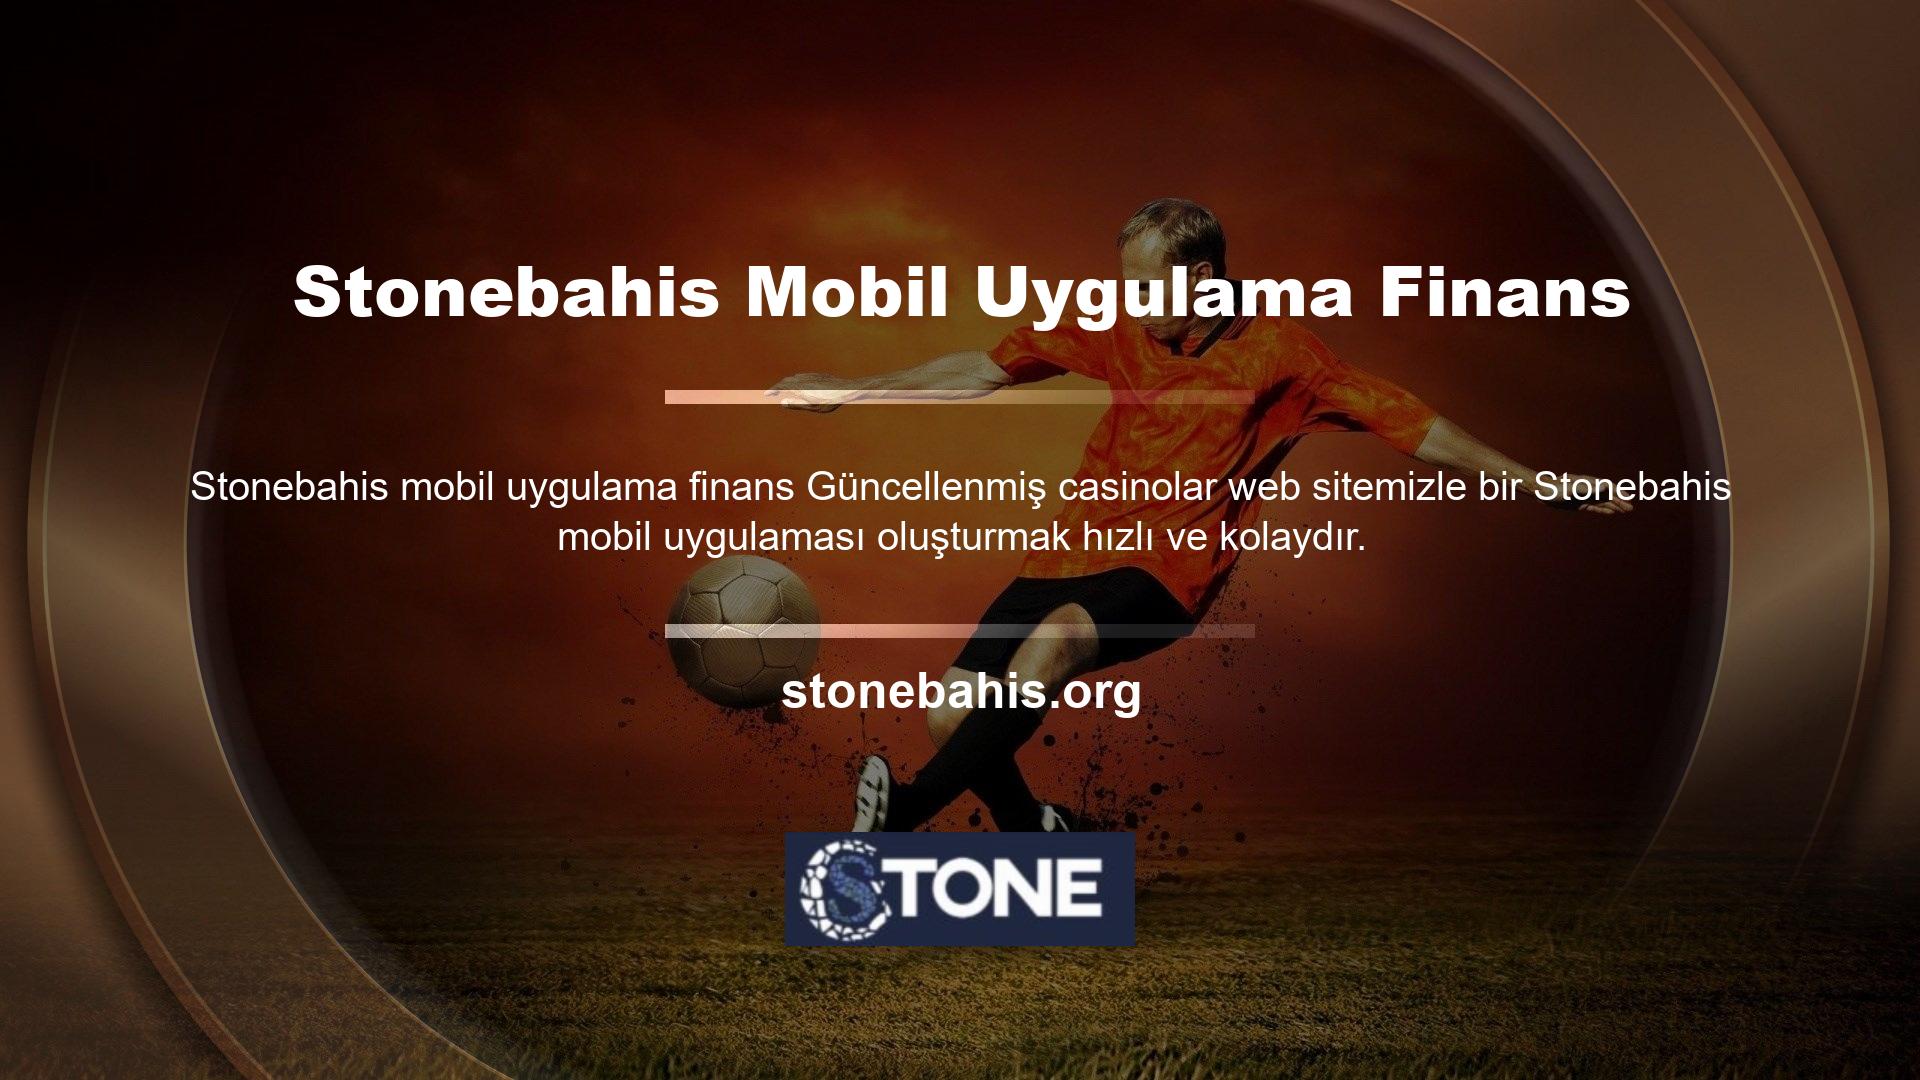 Stonebahis para yatırma ve çekme seçenekleri başvurusu standart bir şekilde yapılır ve resmi web sitesindeki başvuru ile aynıdır